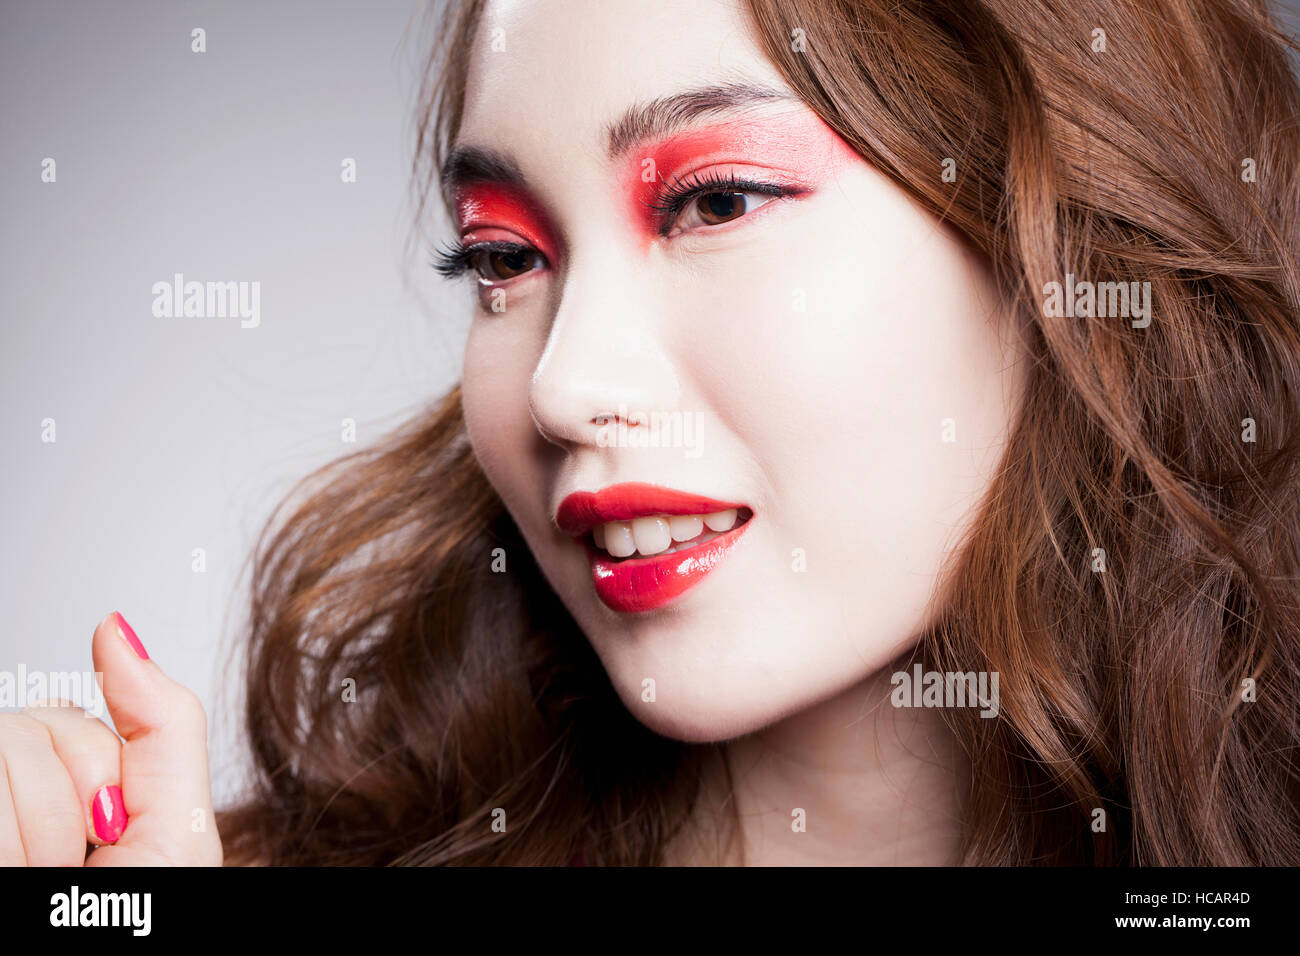 Porträt der jungen Frau mit roten Augen und rote Lippen Stockfoto